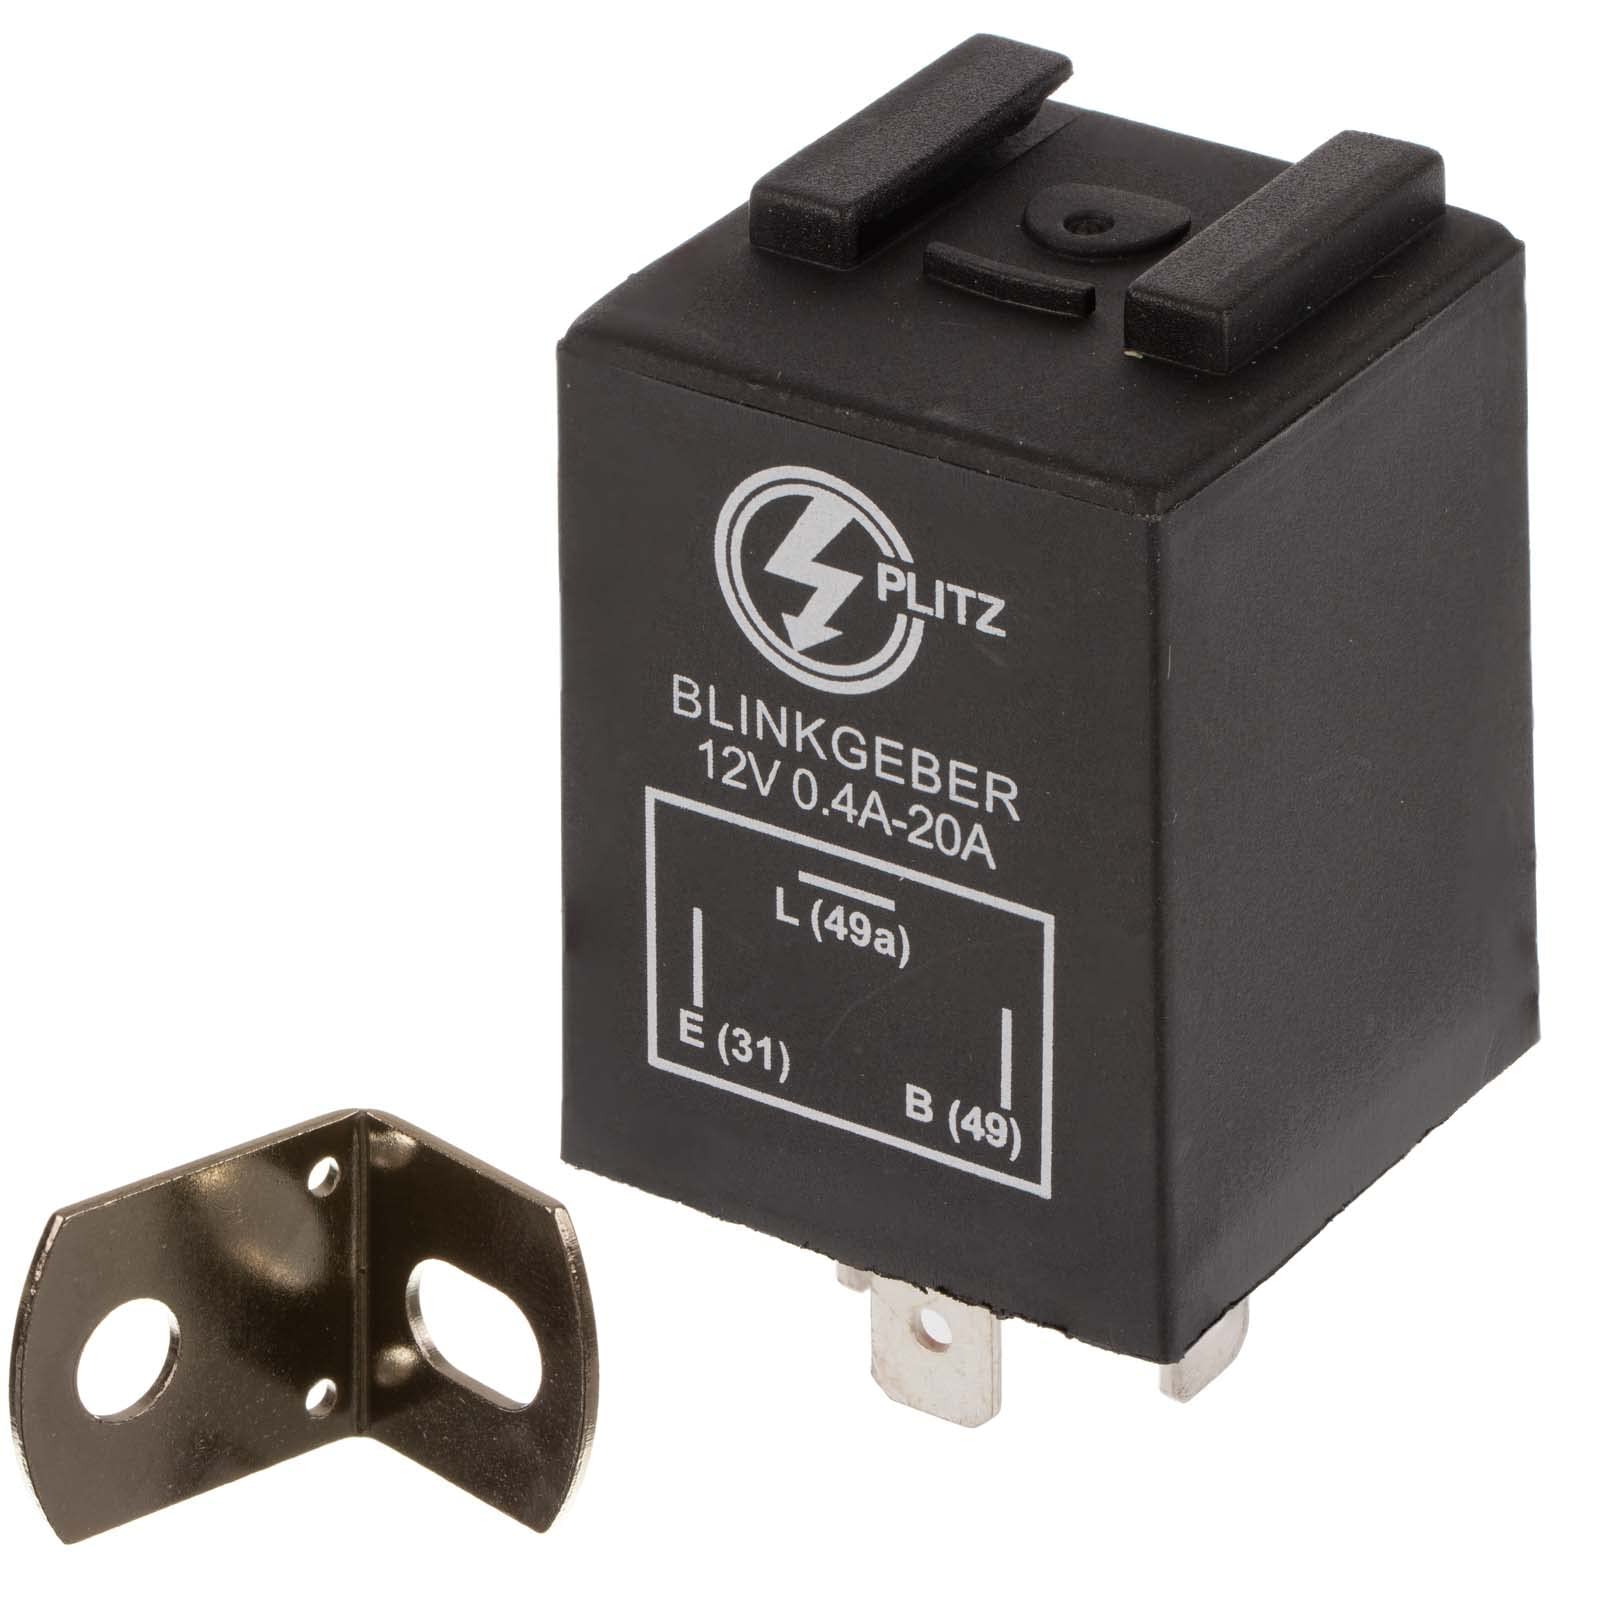 Elektronischer Blinkgeber 12V PLITZ - 3-poliger Anschluß (31, 49, 49a) - 0,02-20A entspricht 0,24-240W - universell einsetzbar - mit Haltewinkel von PLITZ